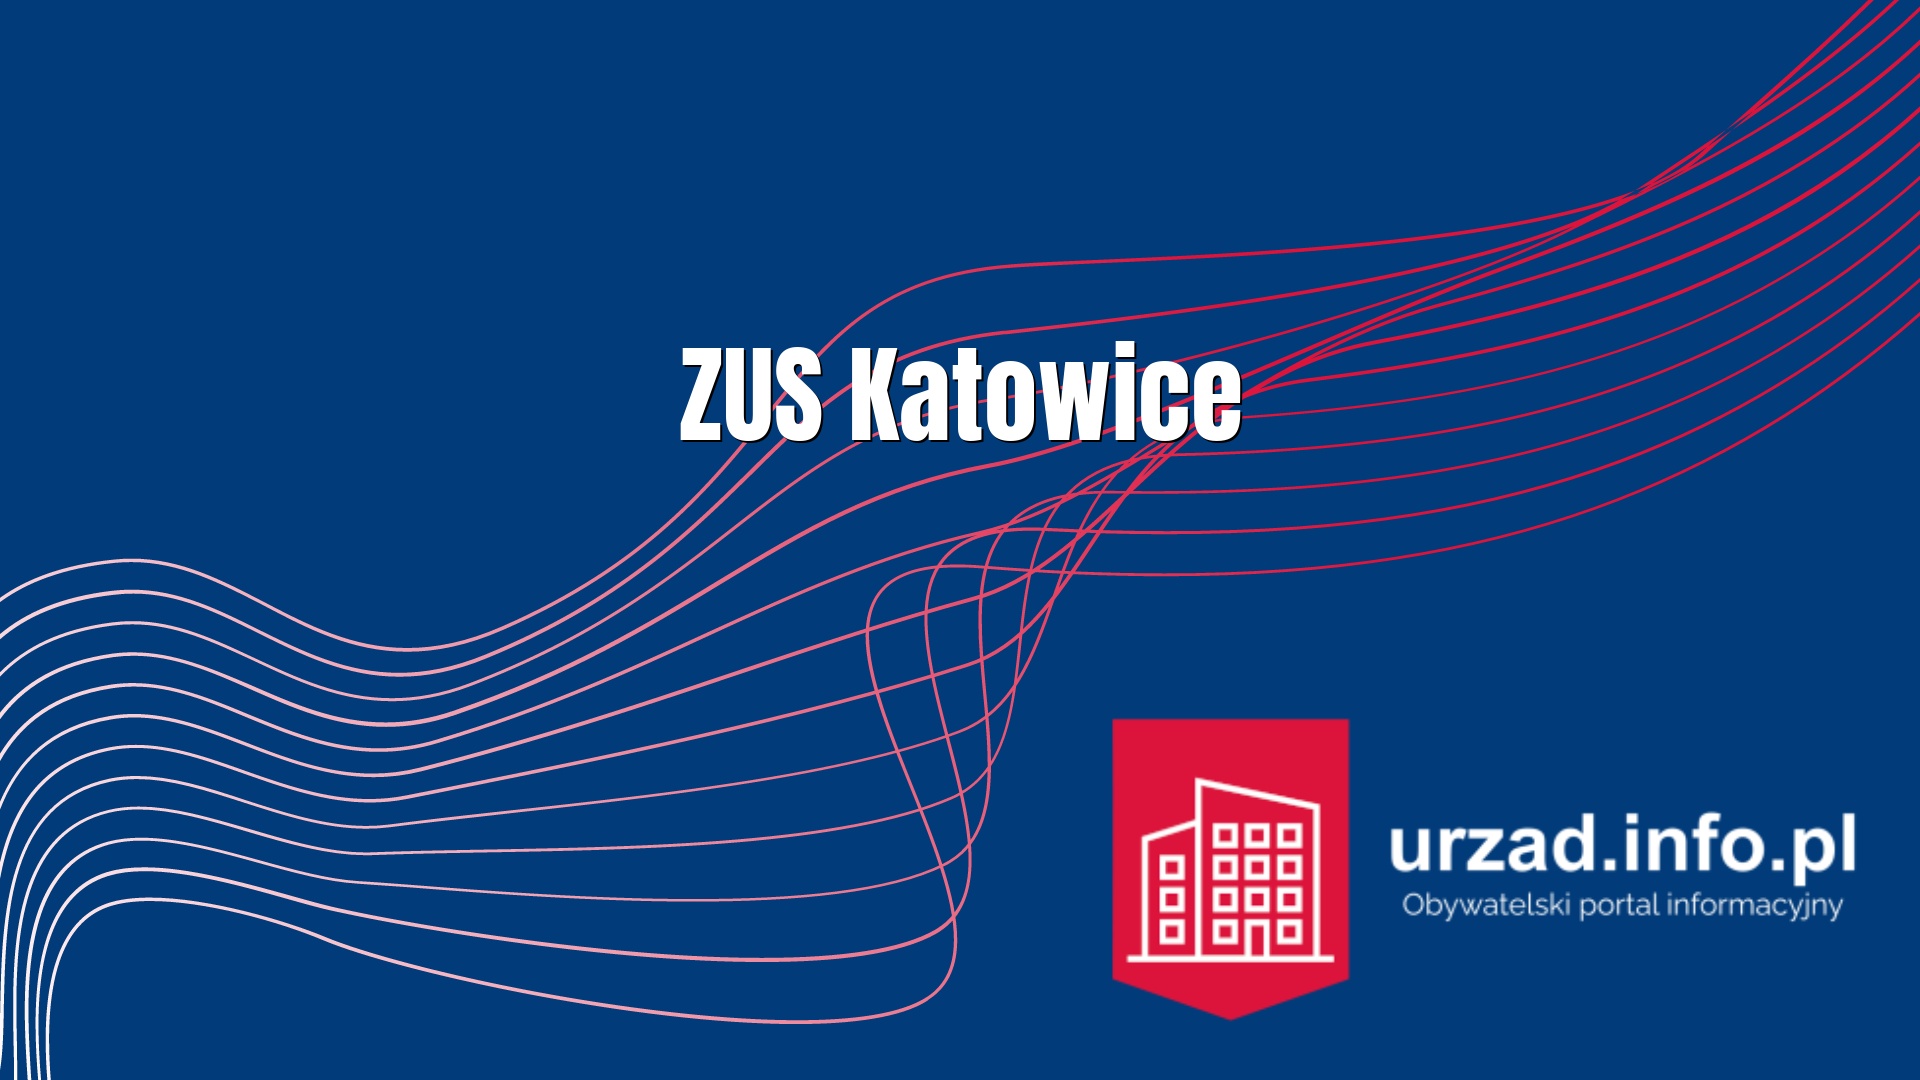 Zakład Ubezpieczeń Społecznych ZUS Katowice